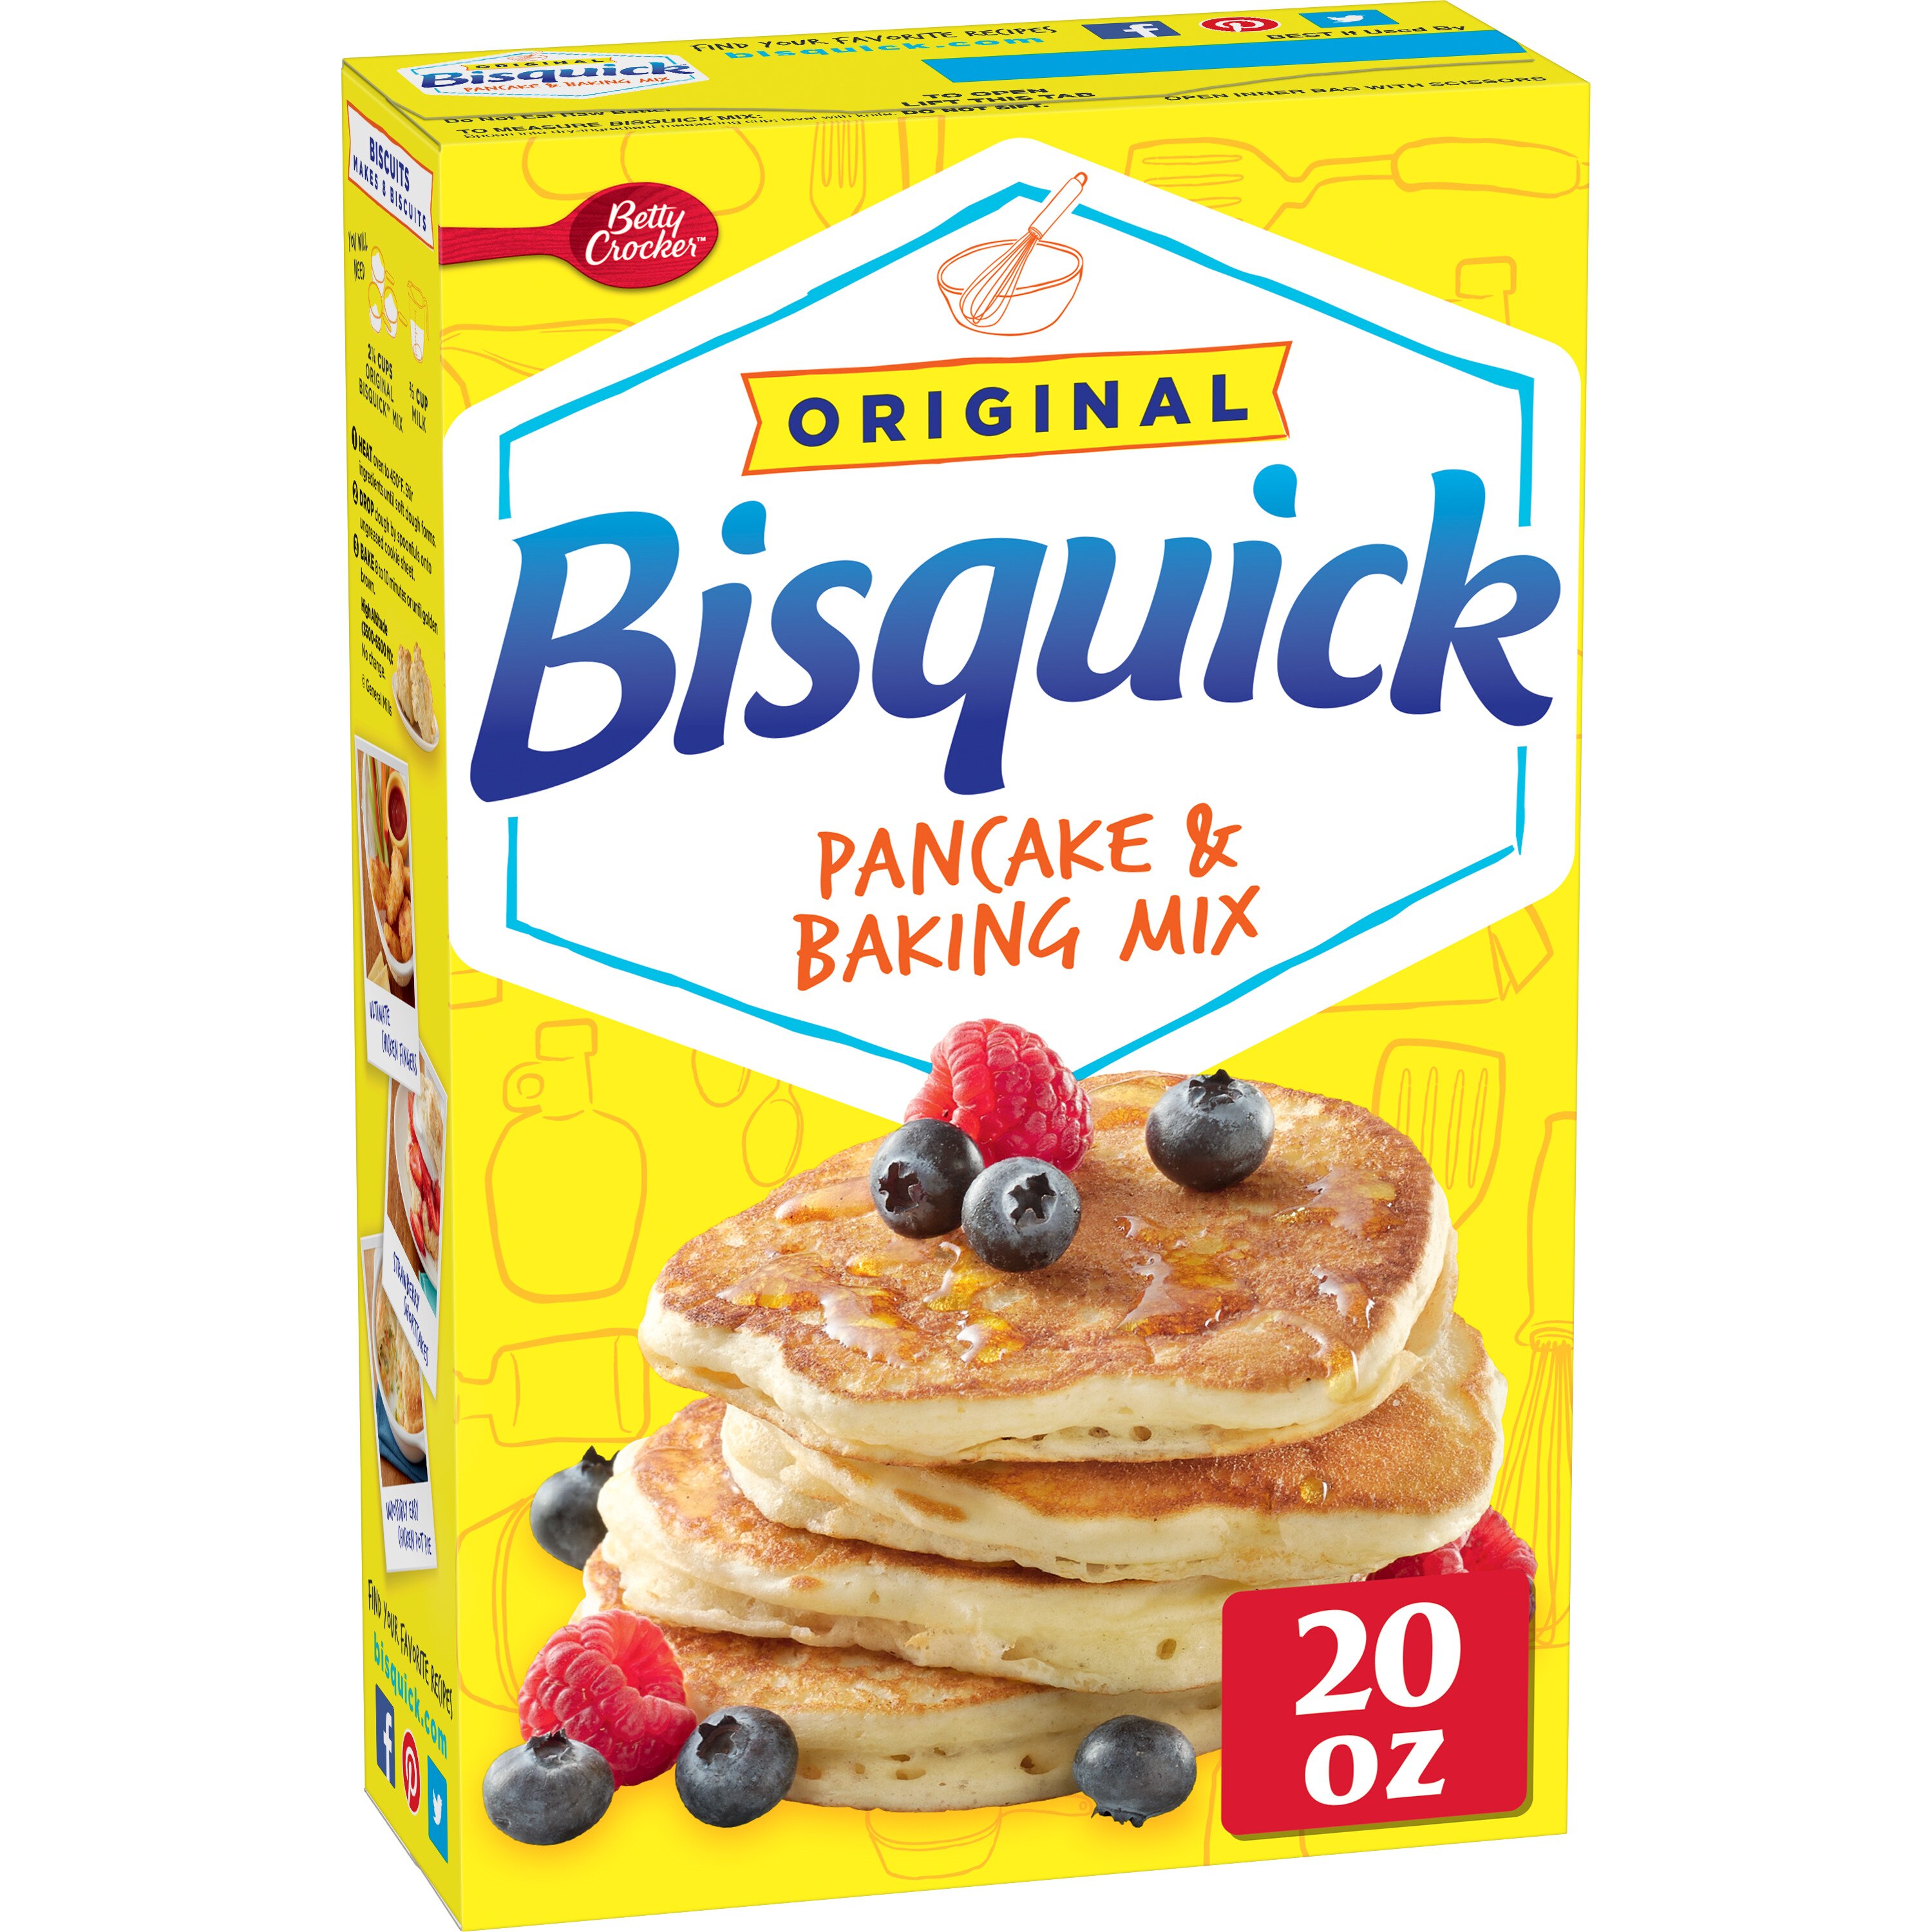 Bisquick Pancake & Baking Mix, Original, 20 OZ